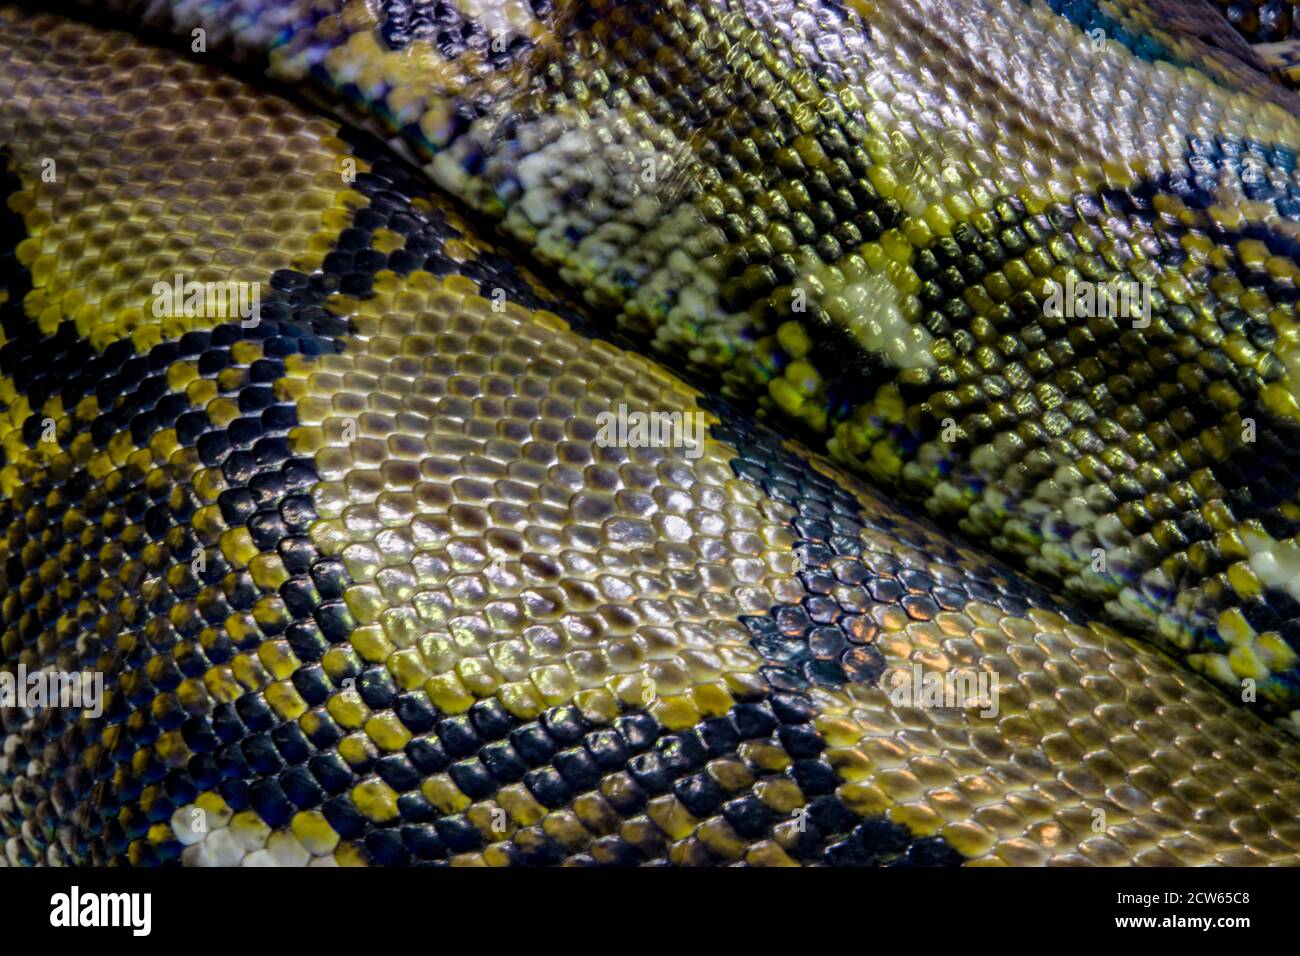 La peau du python réticulé (Malayopython reticulatus). C'est une espèce de serpent de la famille des Pythonidae. Banque D'Images